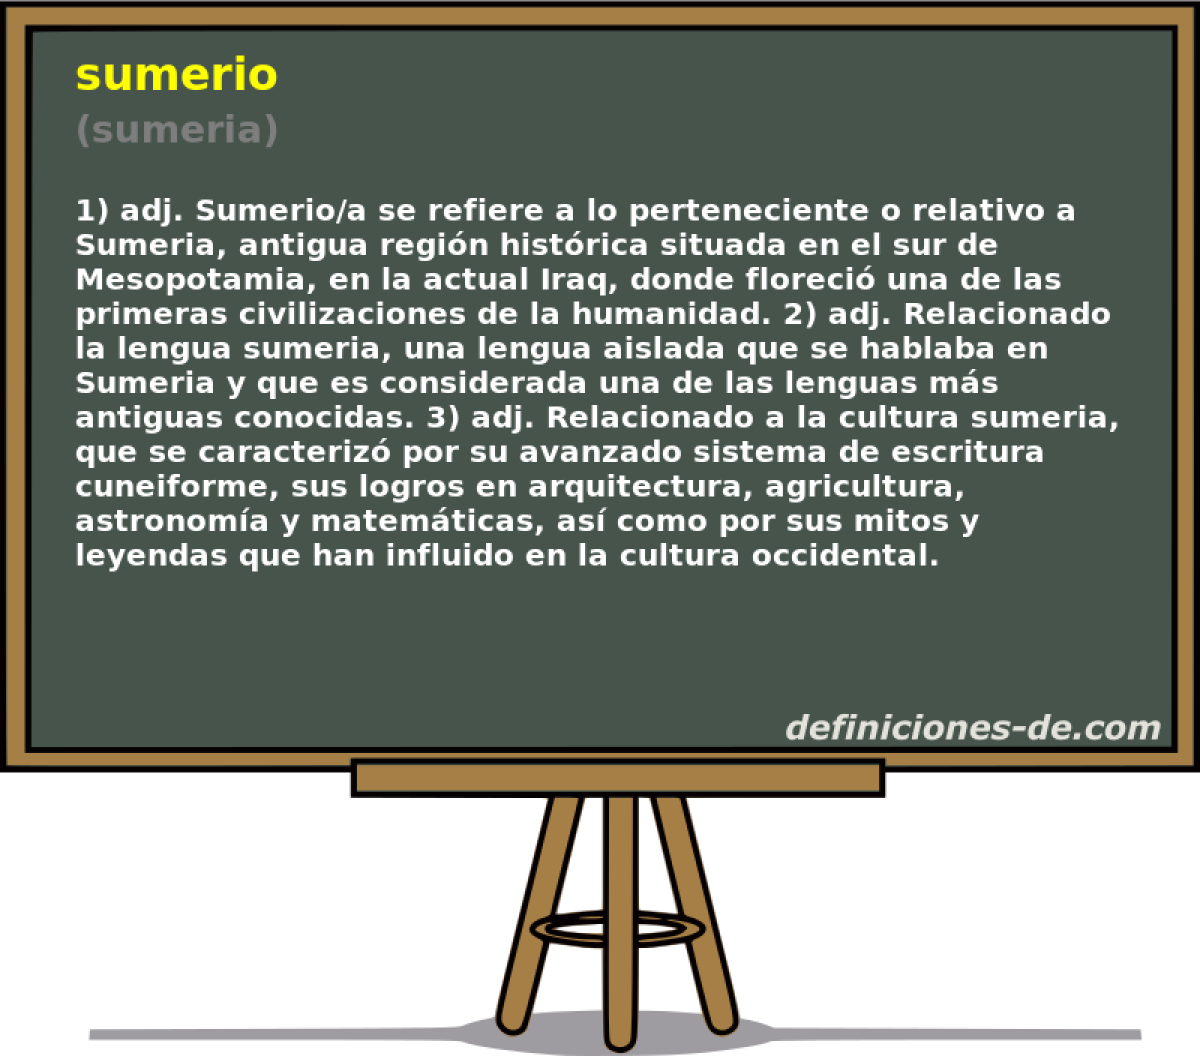 sumerio (sumeria)